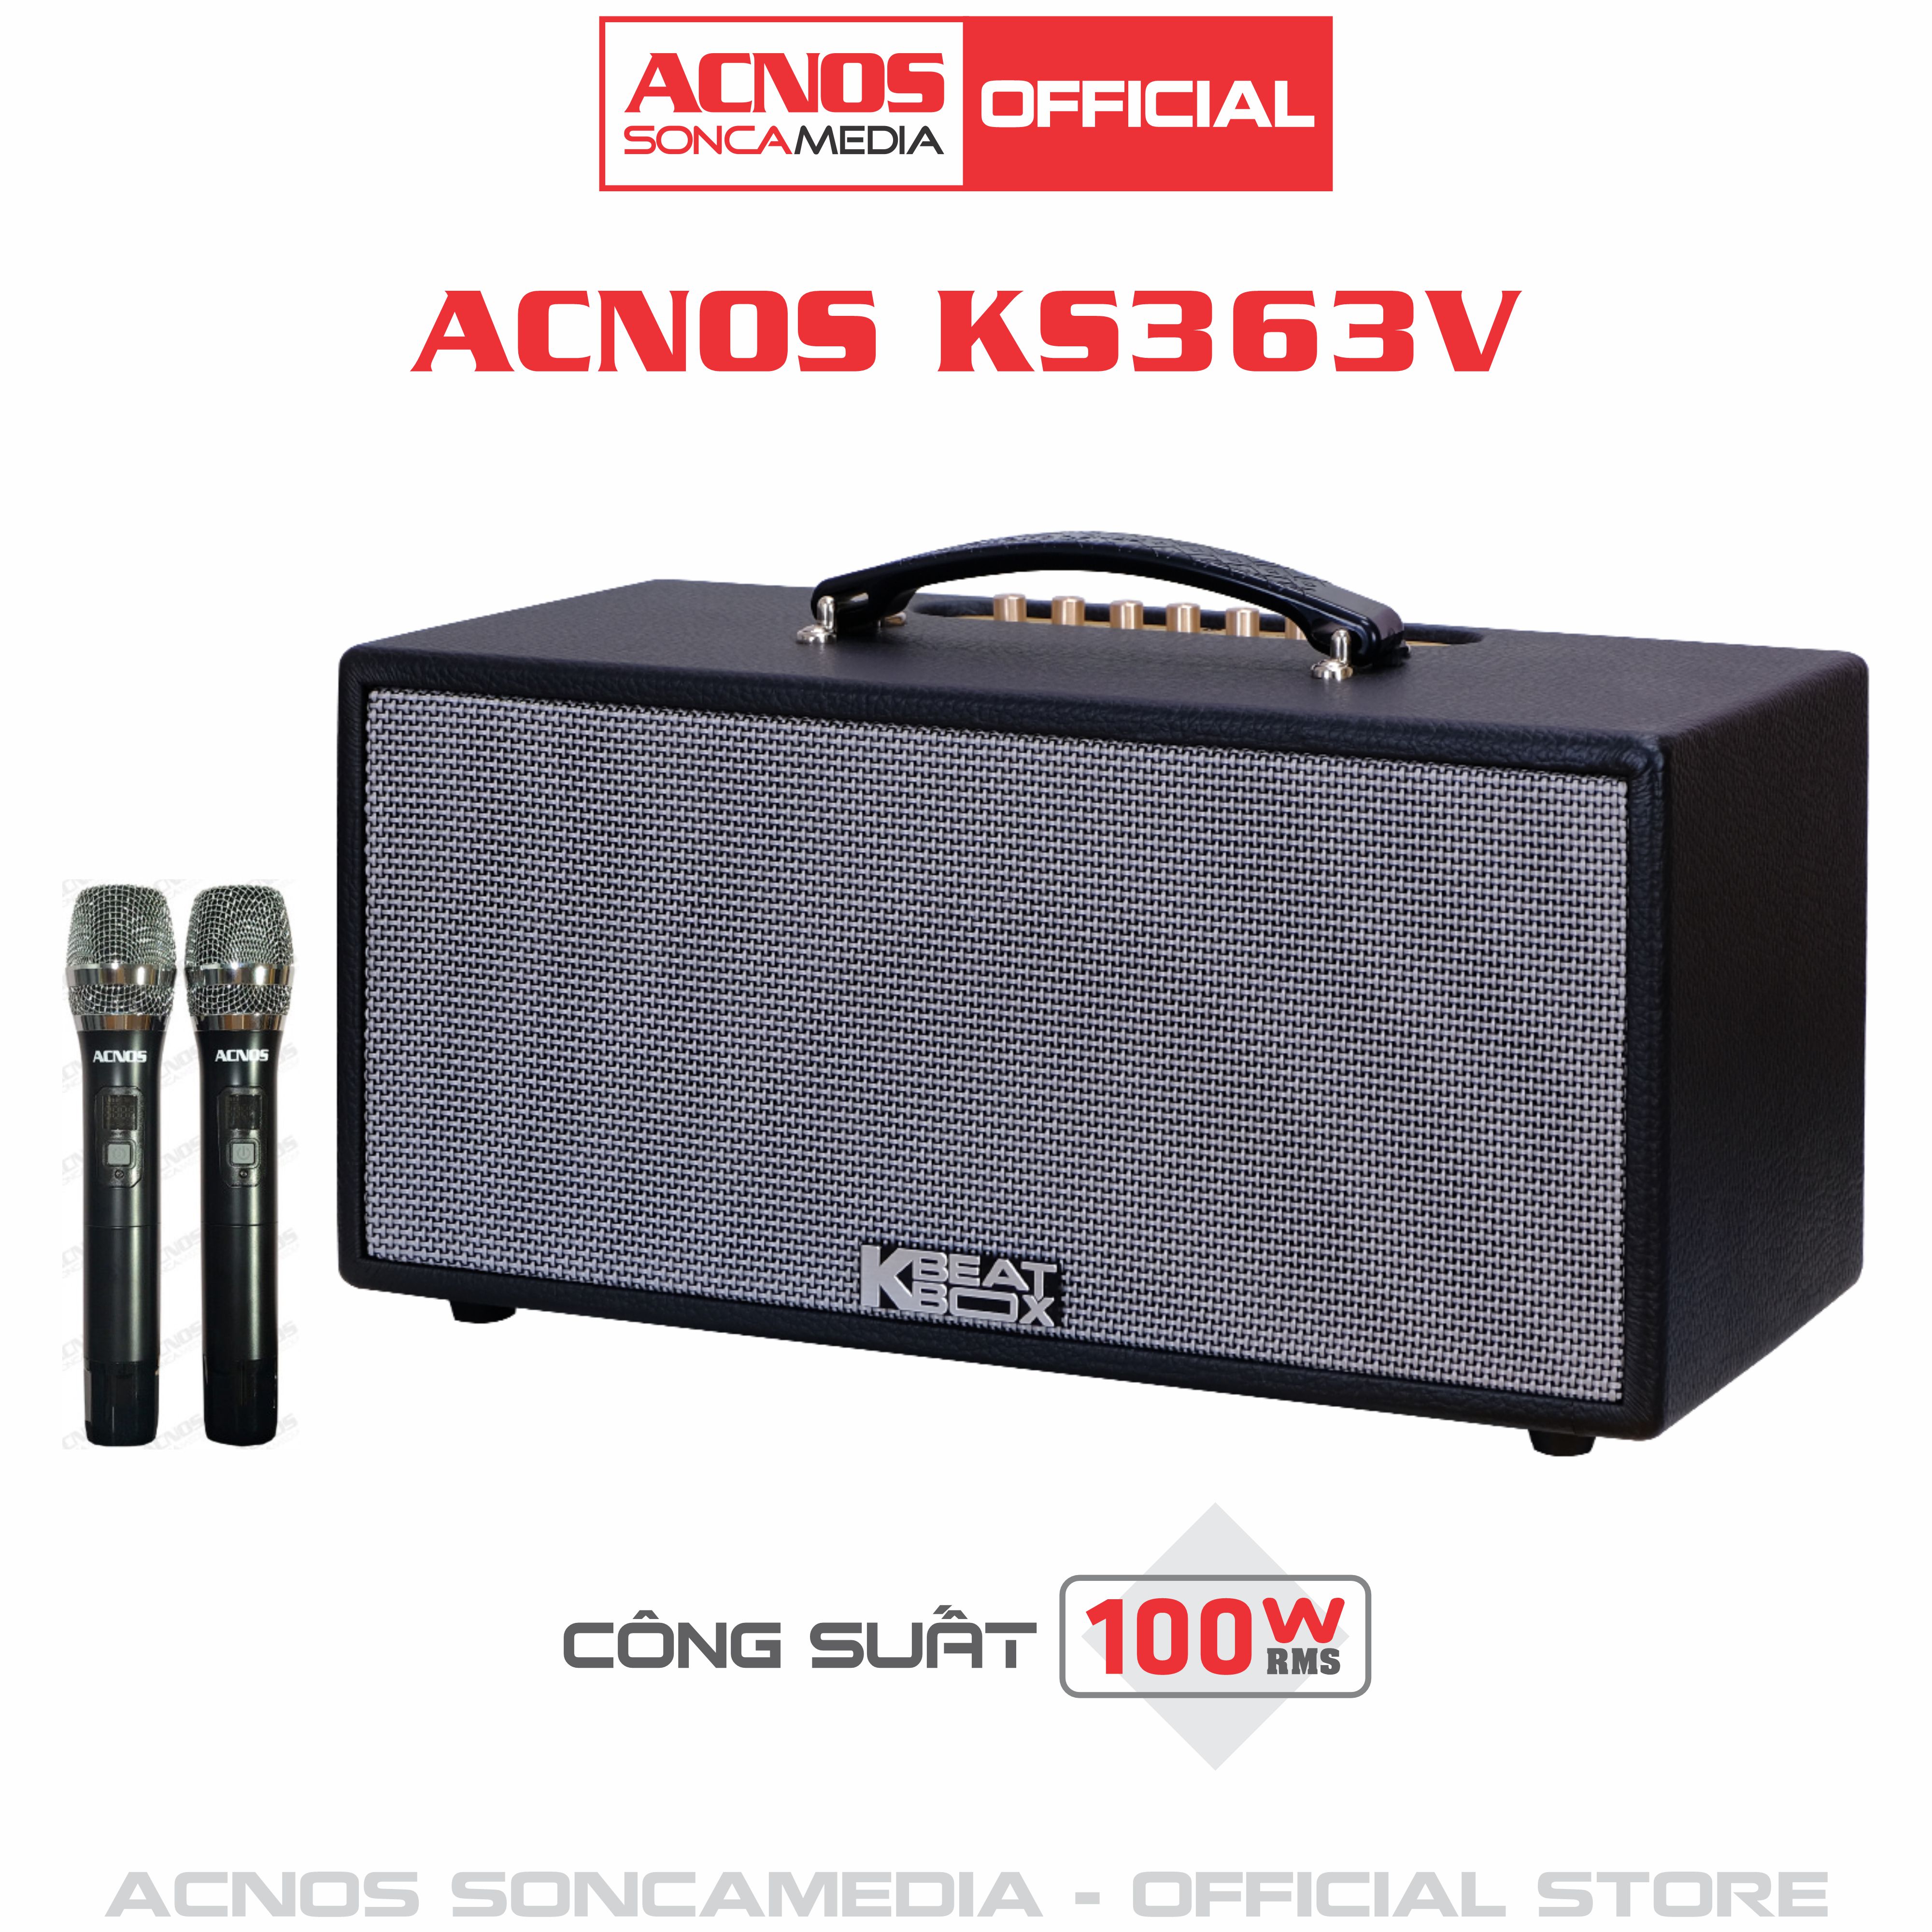 Dàn âm thanh di động xách tay mini ACNOS KS363V